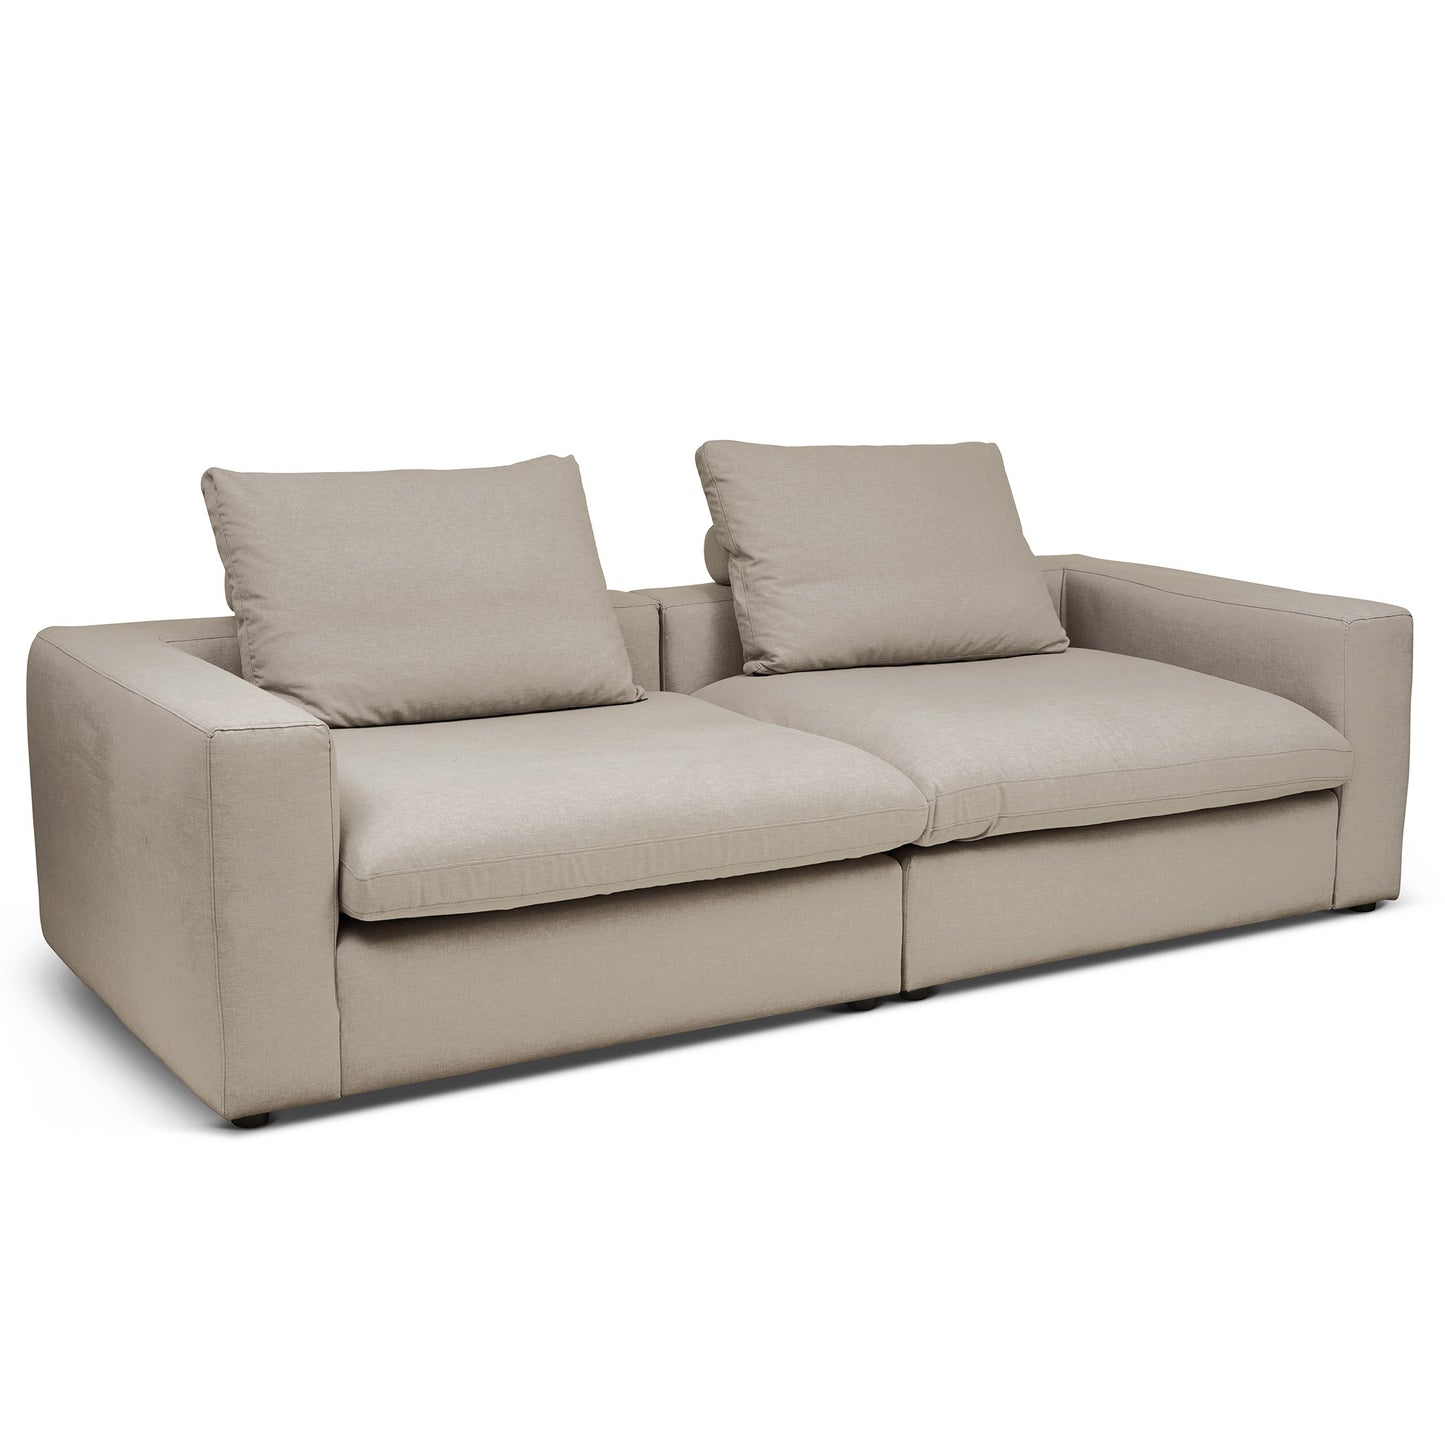 Extra djup 4-sits soffa i beigegrå färg. Palazzo är en byggbar modulsoffa